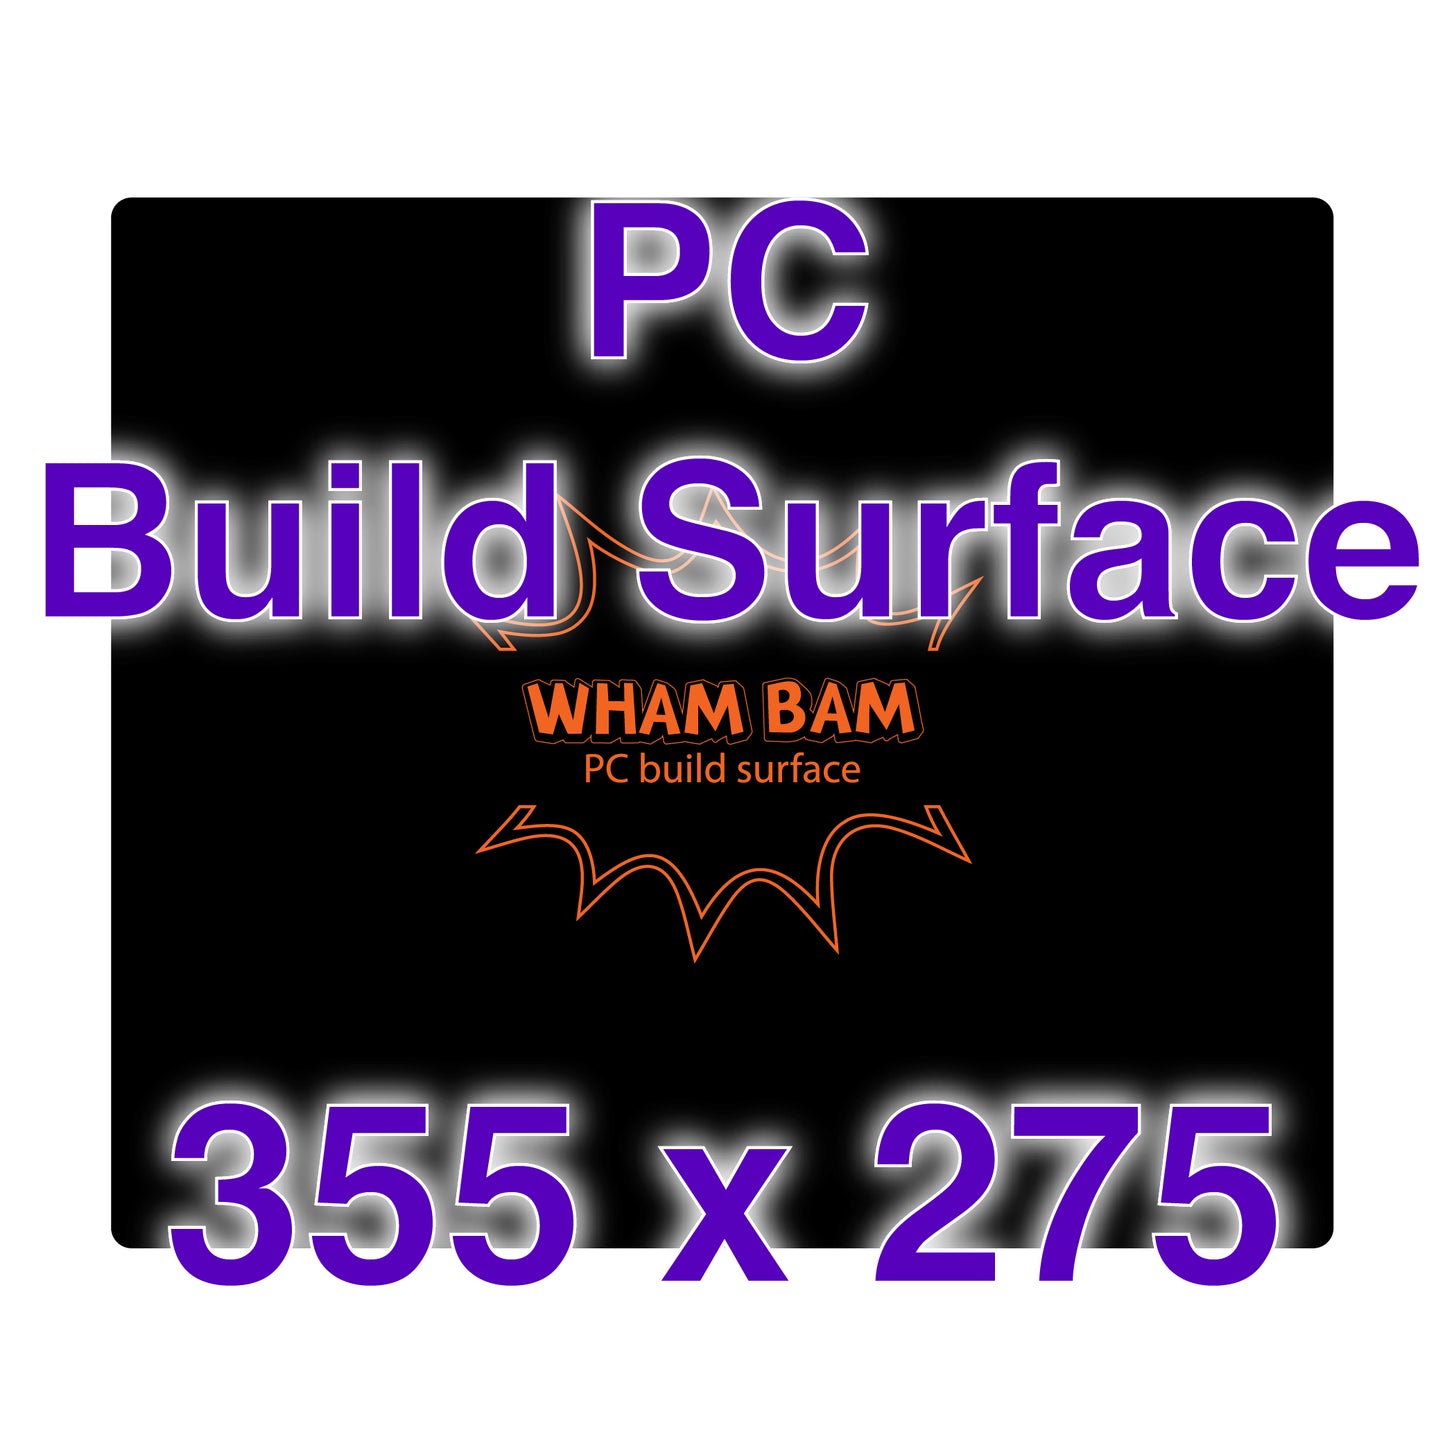 PC Build Surface - 355 x 275